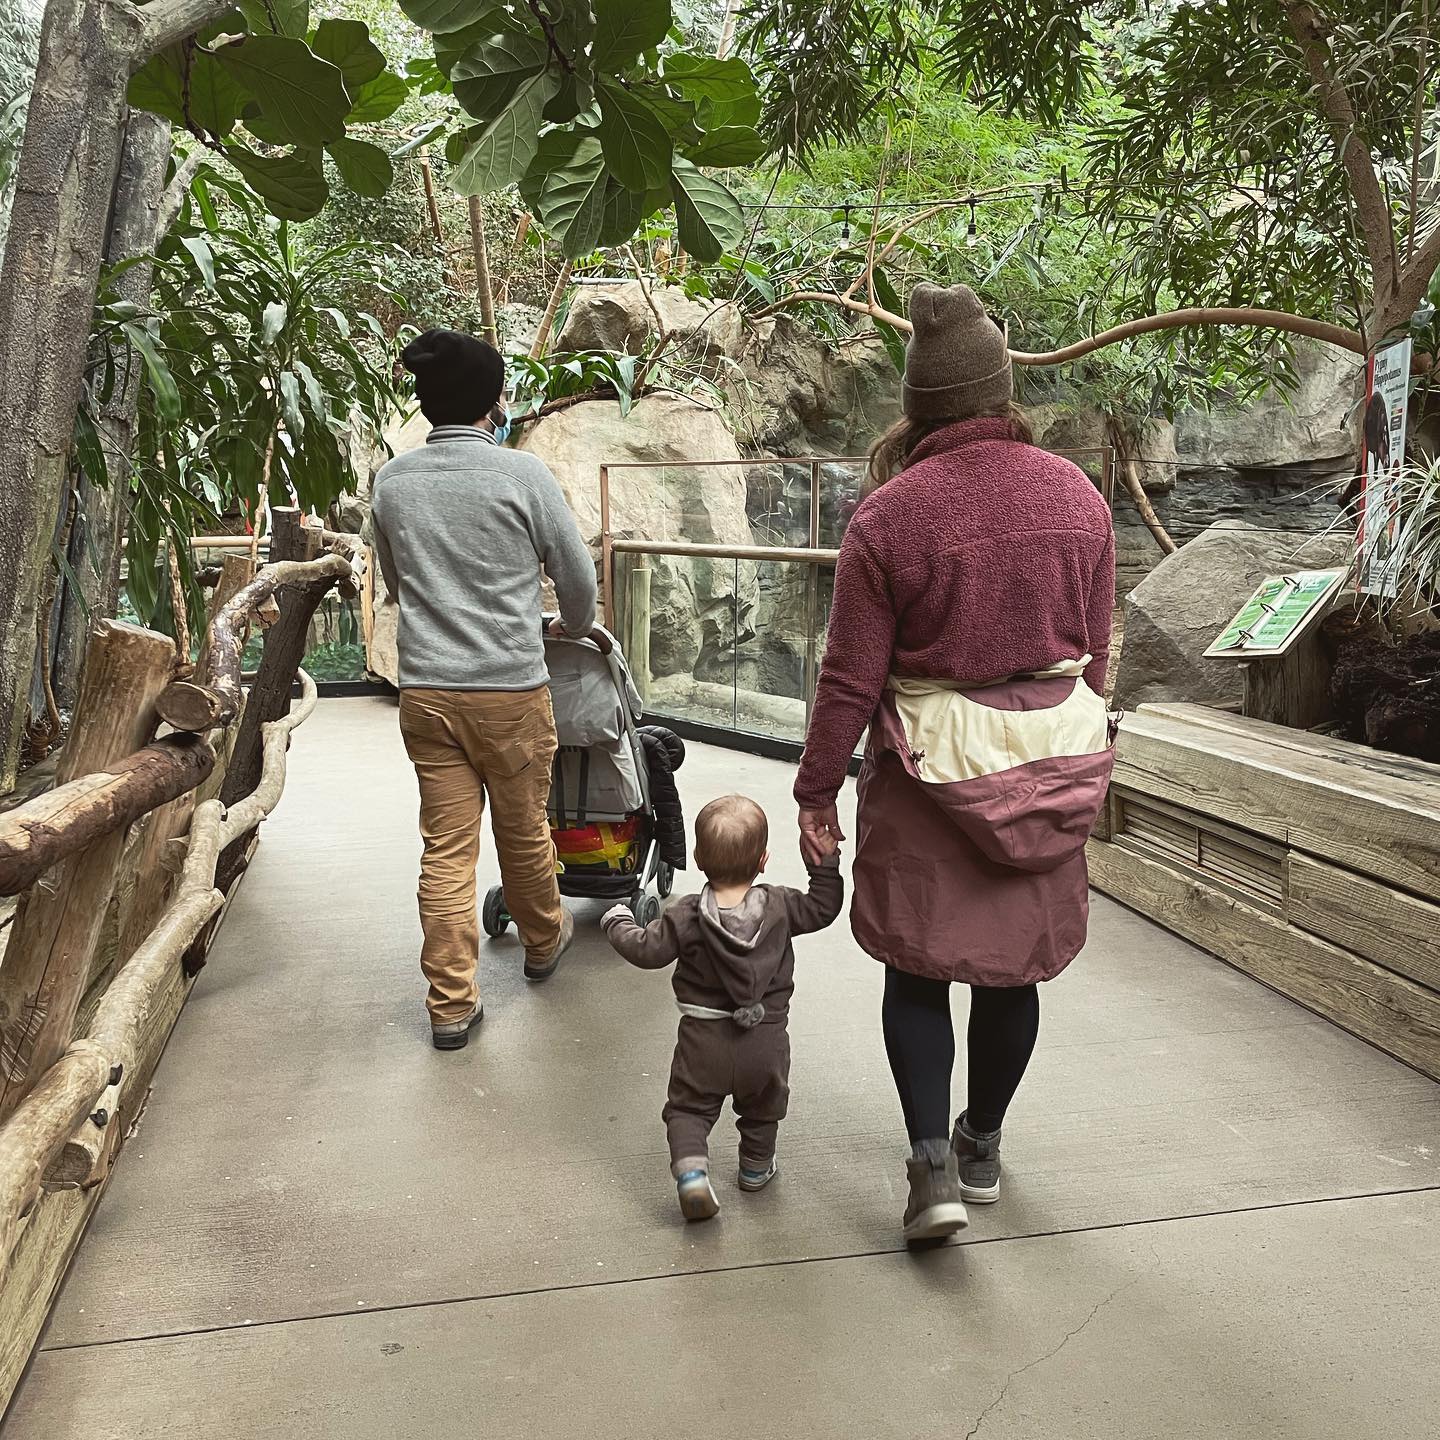 Family Friendly Franklin Park Zoo. Photo by Instagram user @warfels_outside